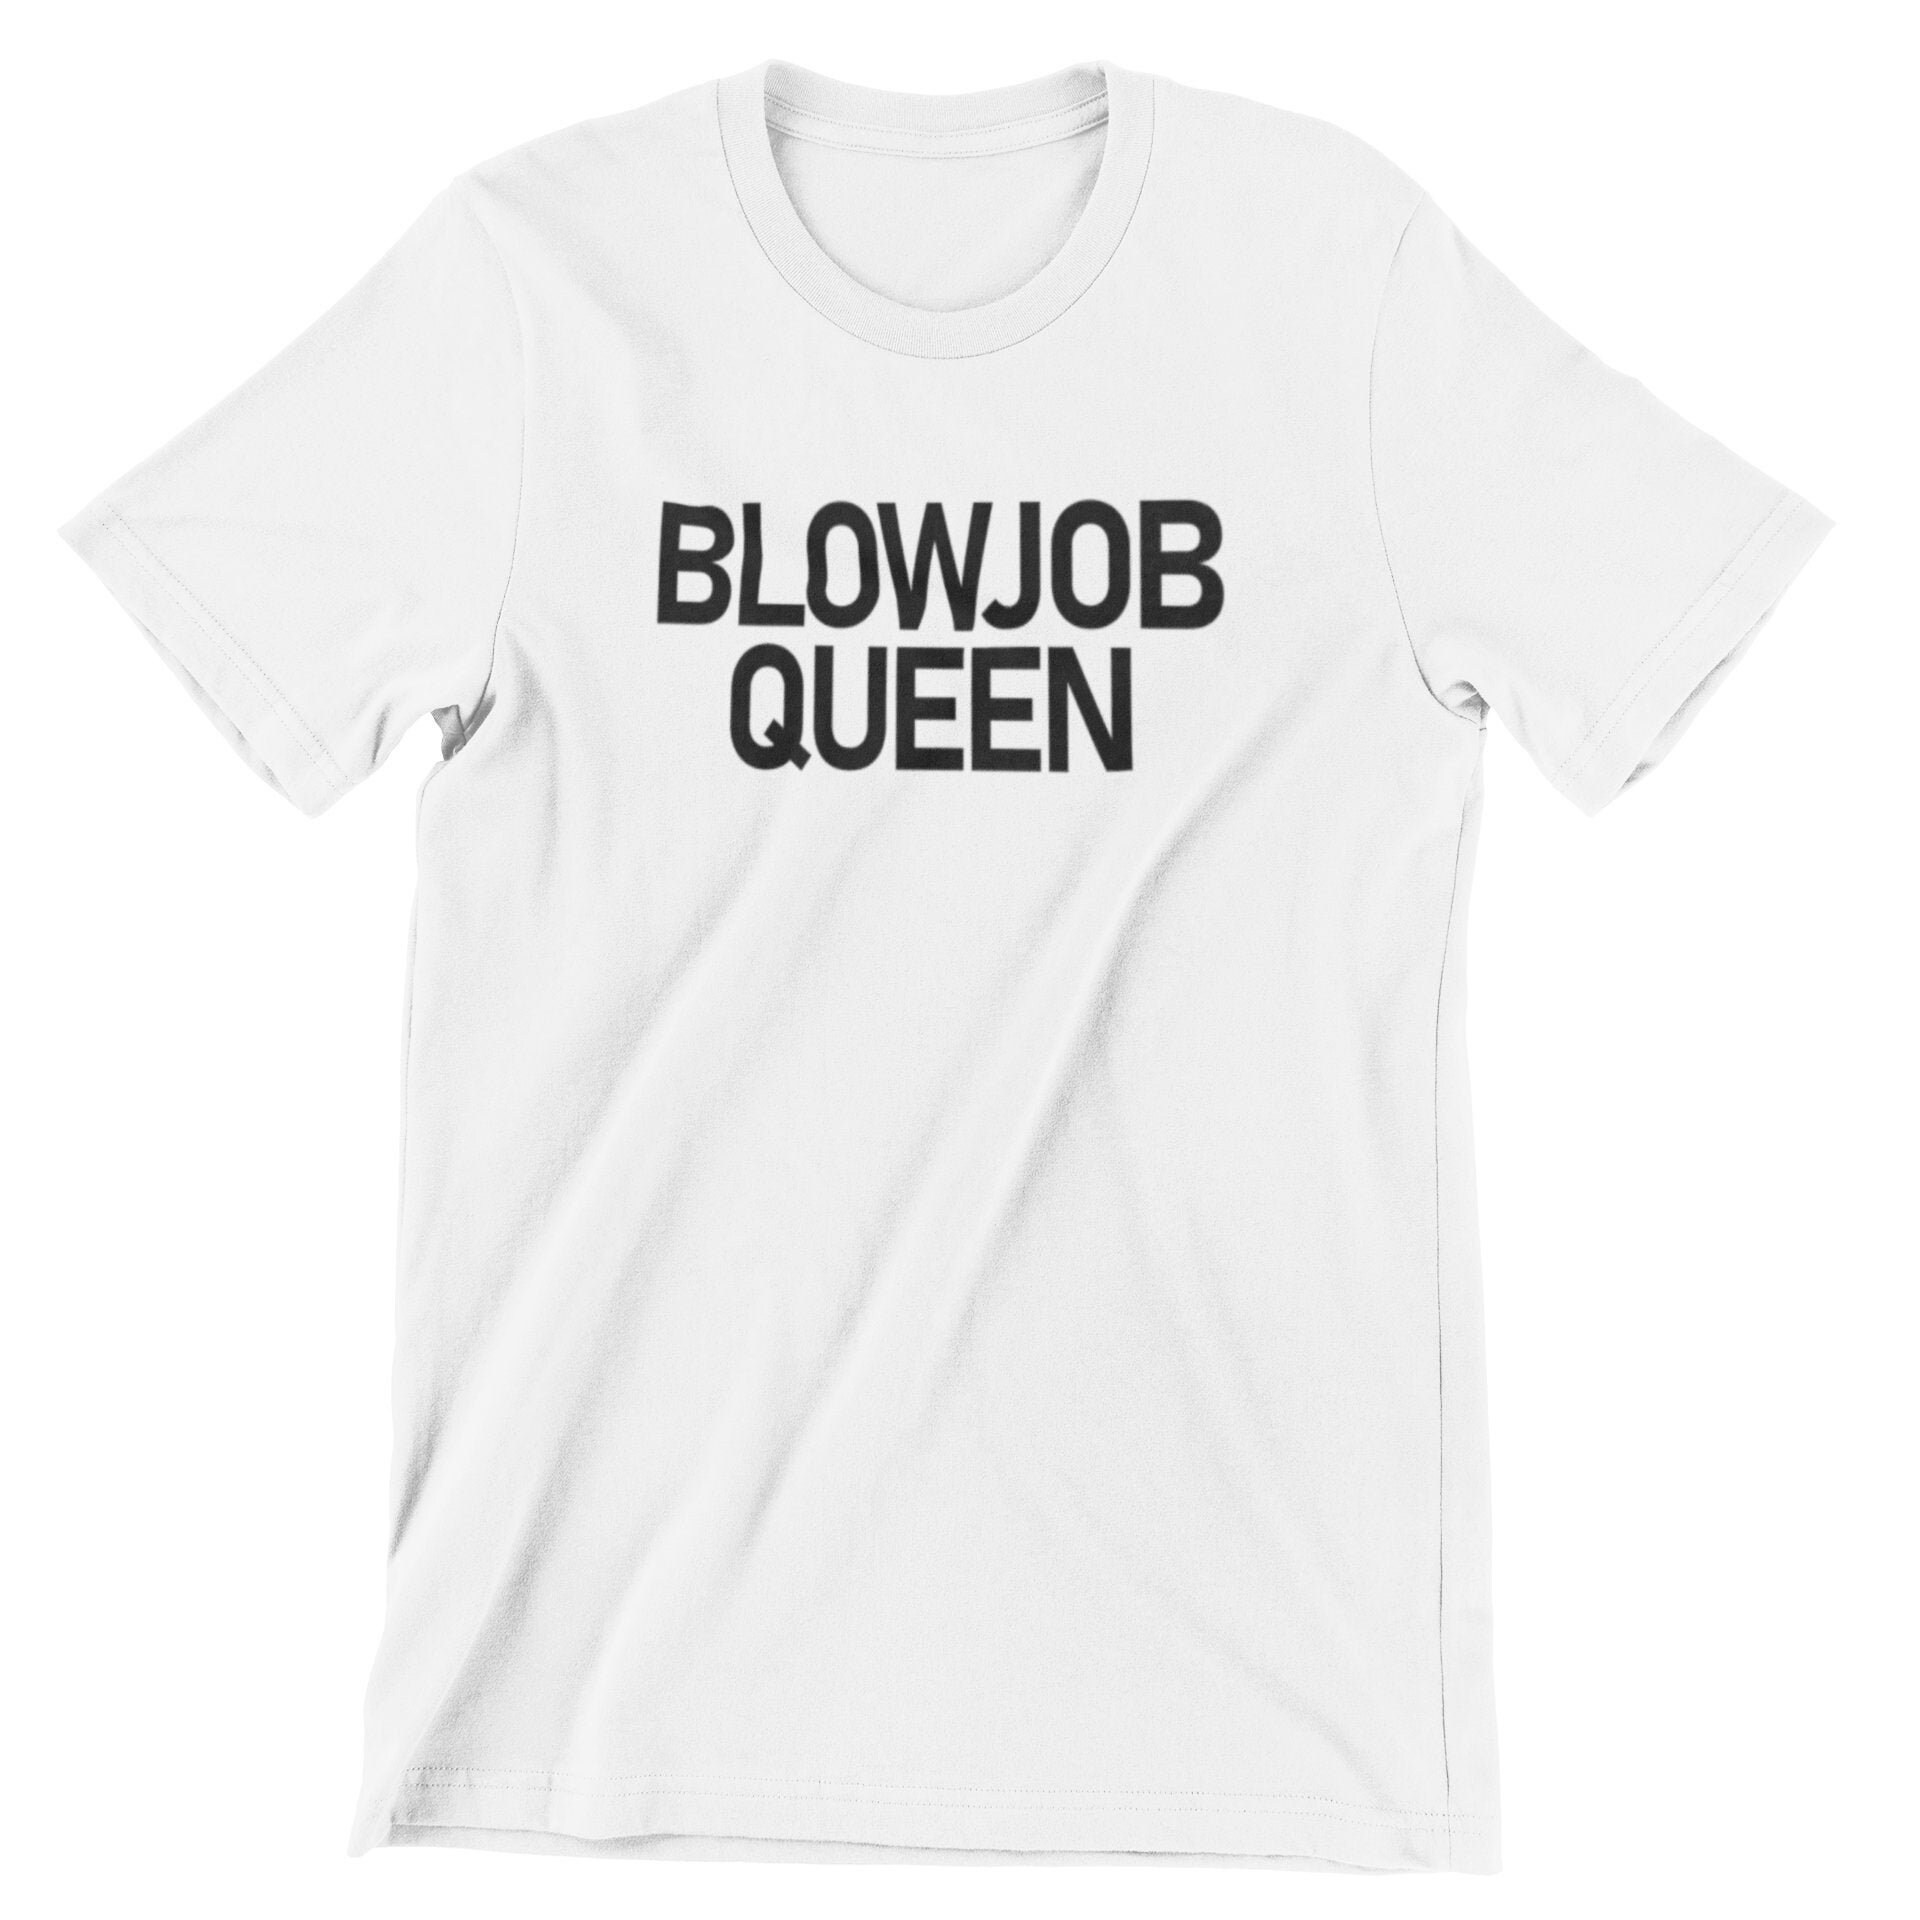 Blowjob queen shirt